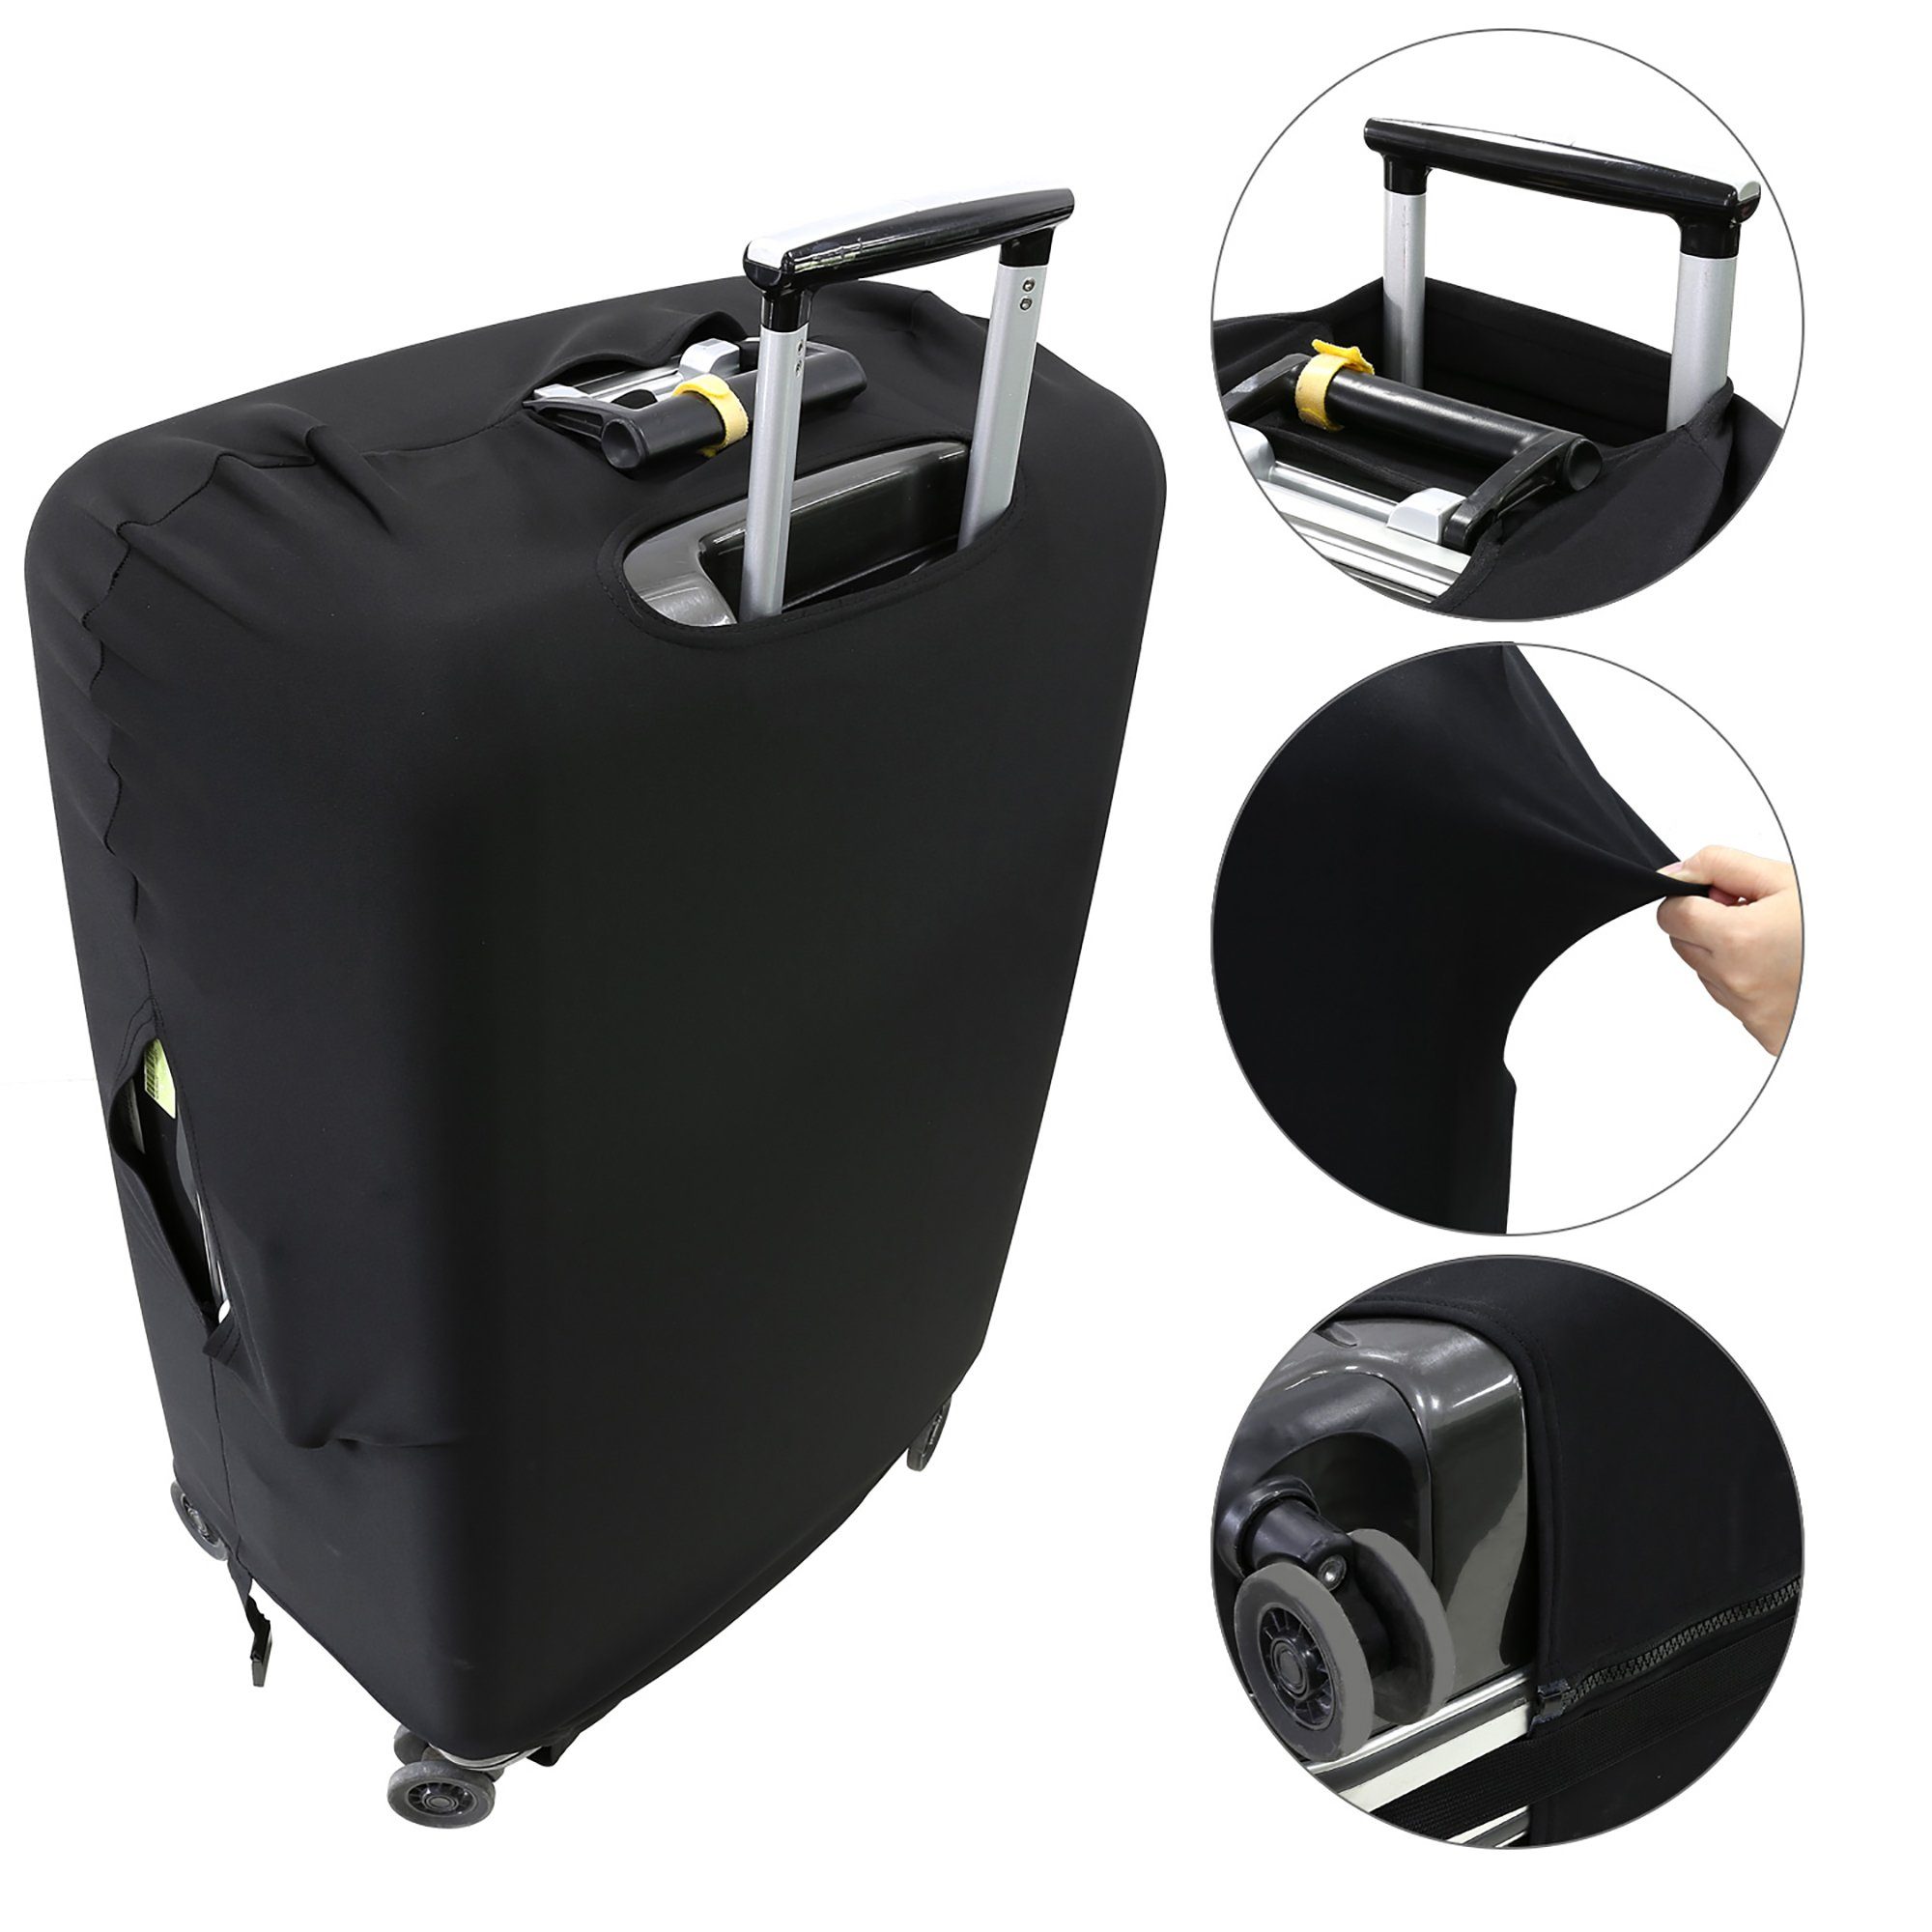 Kofferschutzhülle Kofferabdeckung Elastisch Gepäck Schutzhülle Kofferbezug  S-XL